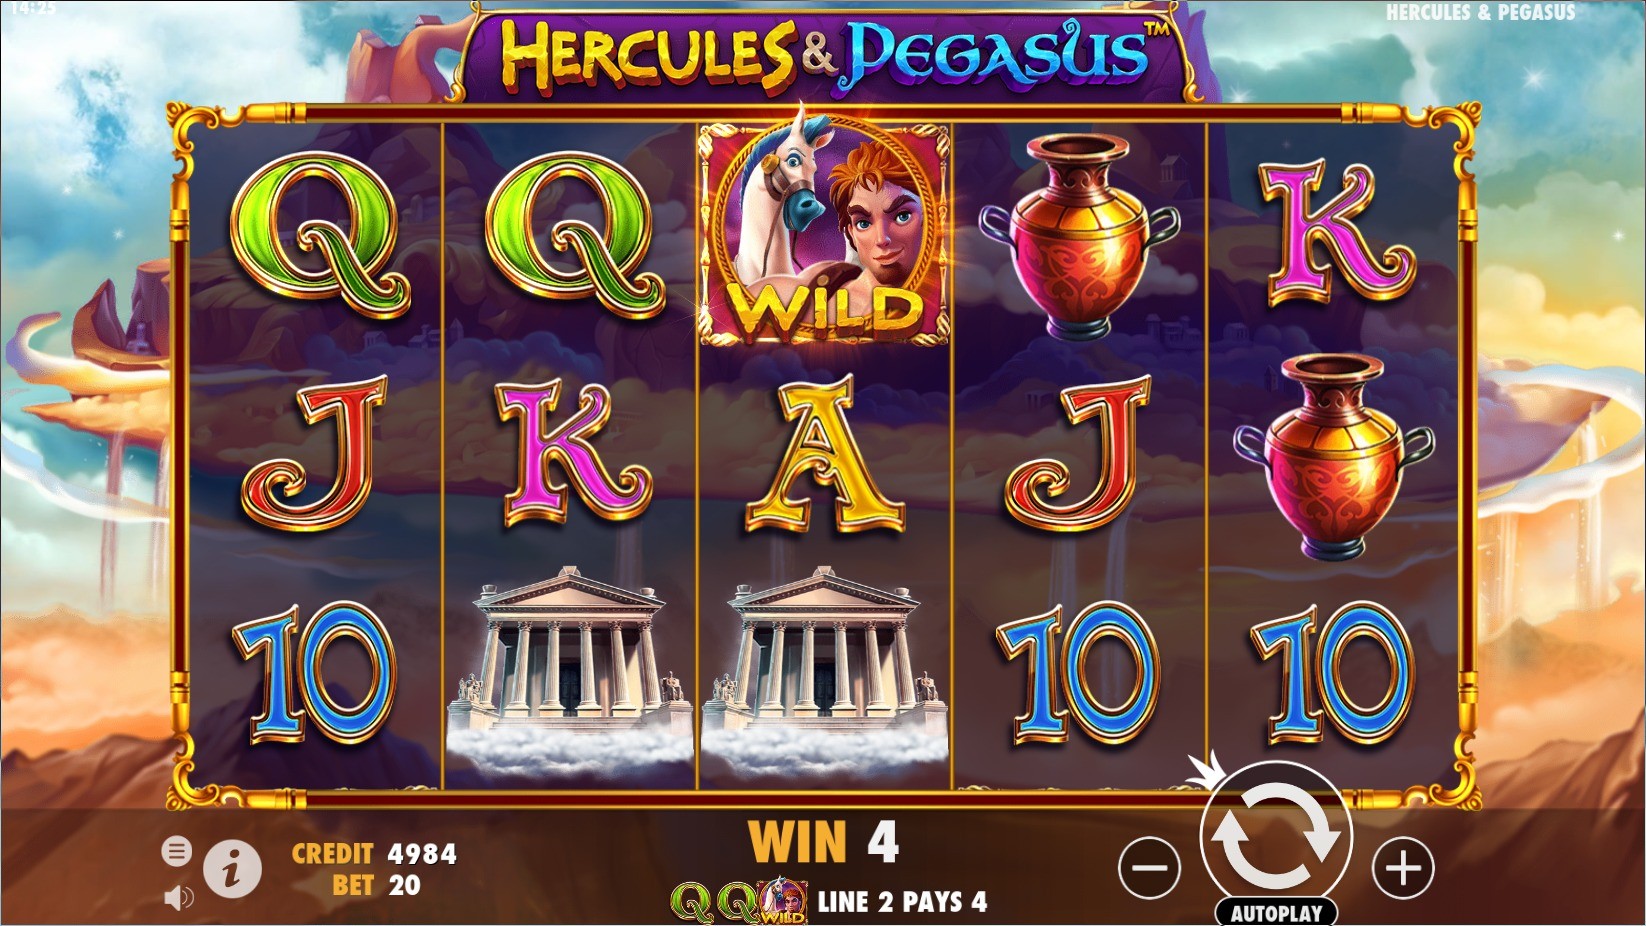      Hercules & Pegasus